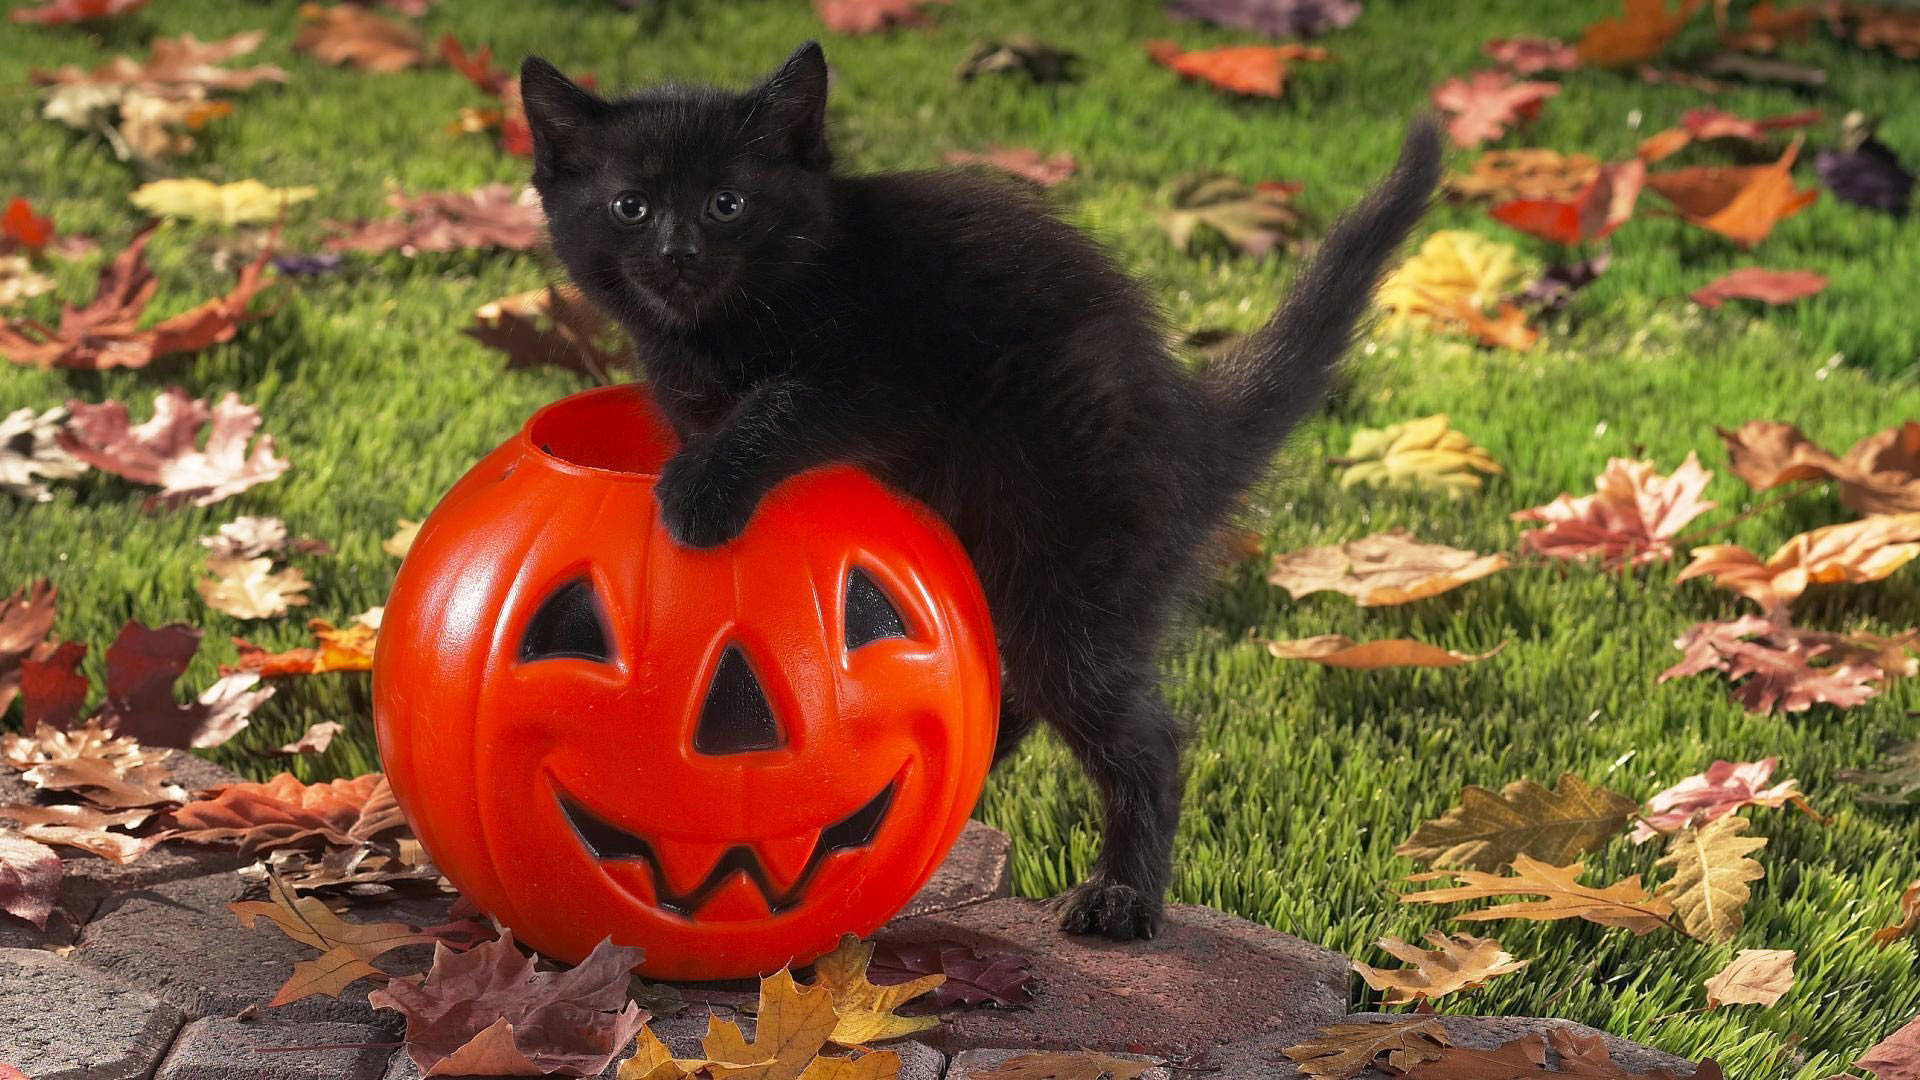 Cat And Pumpkin Cute Halloween Desktop